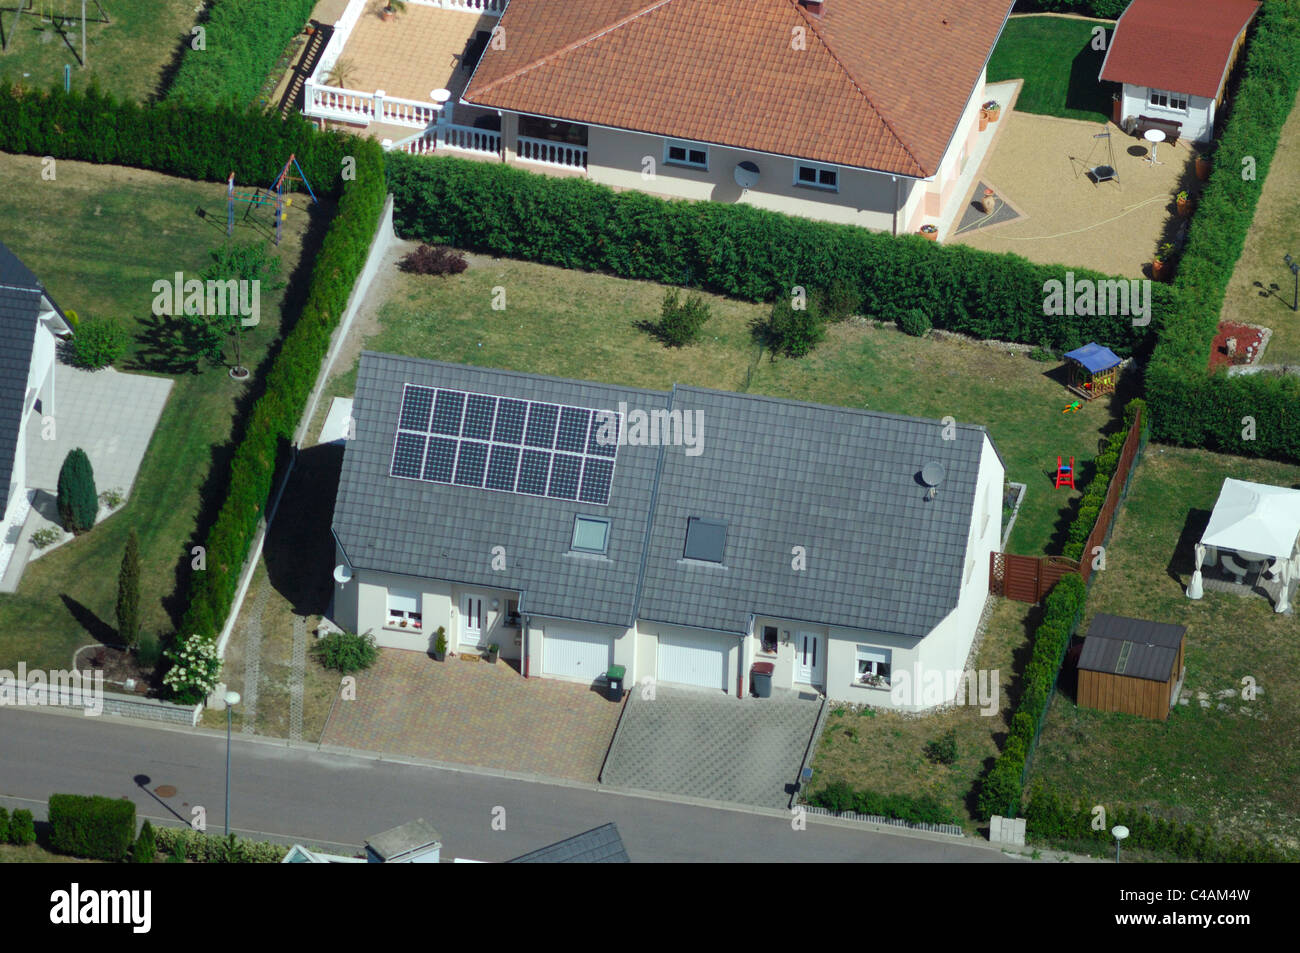 Vue aérienne de la maison privée avec des panneaux photovoltaïques sur le toit, France Banque D'Images